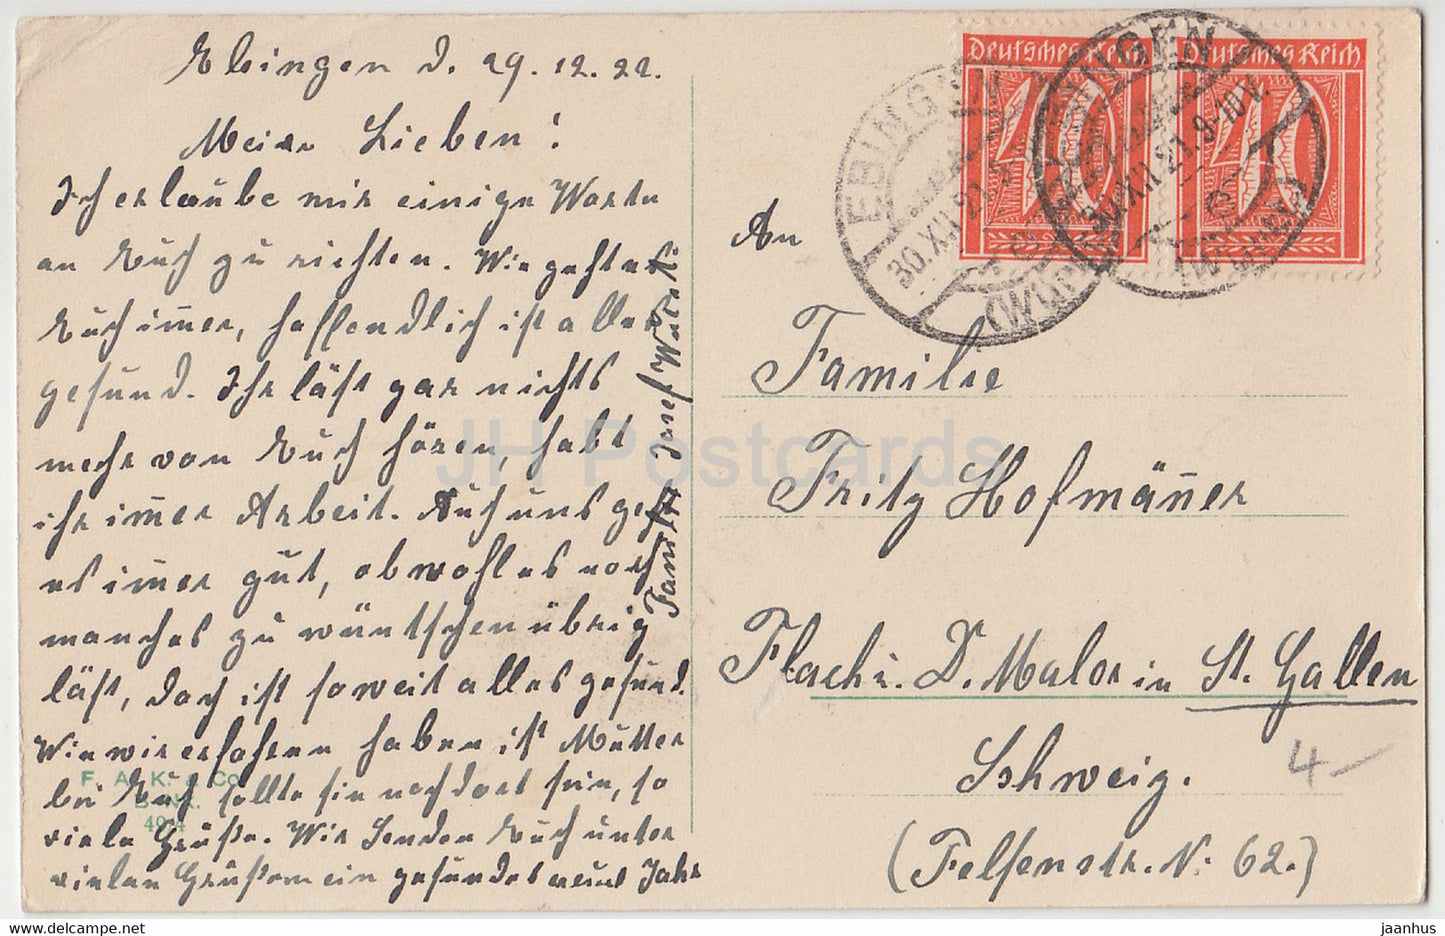 Carte de vœux du Nouvel An - Gluckliches Neujahr - cerf - illustration signée - 4974 - carte postale ancienne - 1921 - Allemagne - utilisé